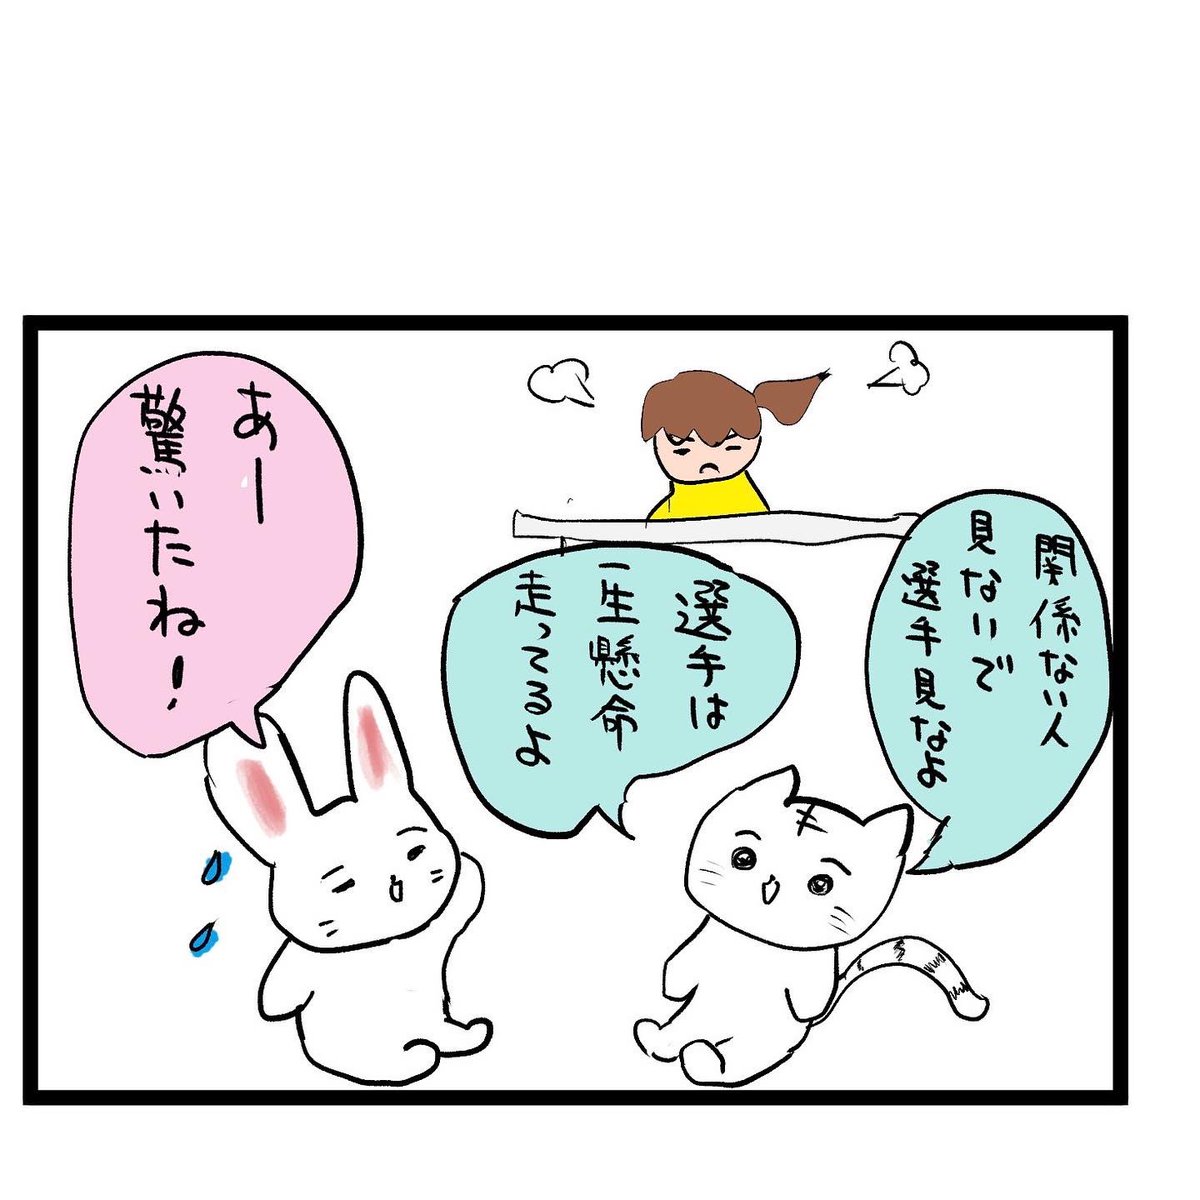 #四コマ漫画
#箱根駅伝
暴言を吐く 